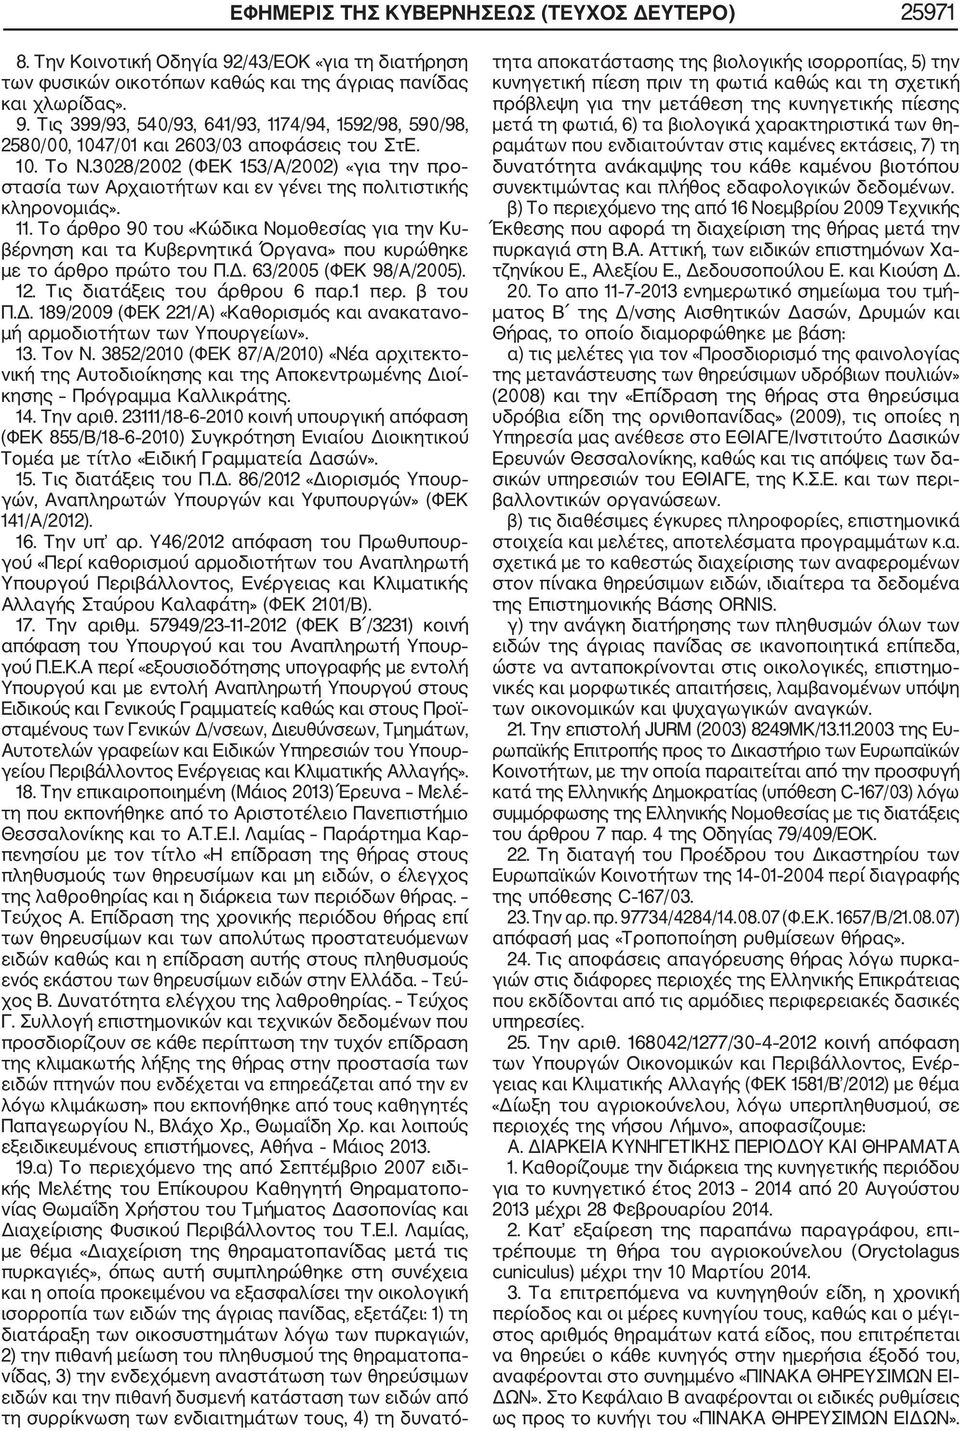 Το άρθρο 90 του «Κώδικα Νομοθεσίας για την Κυ βέρνηση και τα Κυβερνητικά Όργανα» που κυρώθηκε με το άρθρο πρώτο του Π.Δ. 63/2005 (ΦΕΚ 98/Α/2005). 12. Τις διατάξεις του άρθρου 6 παρ.1 περ. β του Π.Δ. 189/2009 (ΦΕΚ 221/Α) «Καθορισμός και ανακατανο μή αρμοδιοτήτων των Υπουργείων».